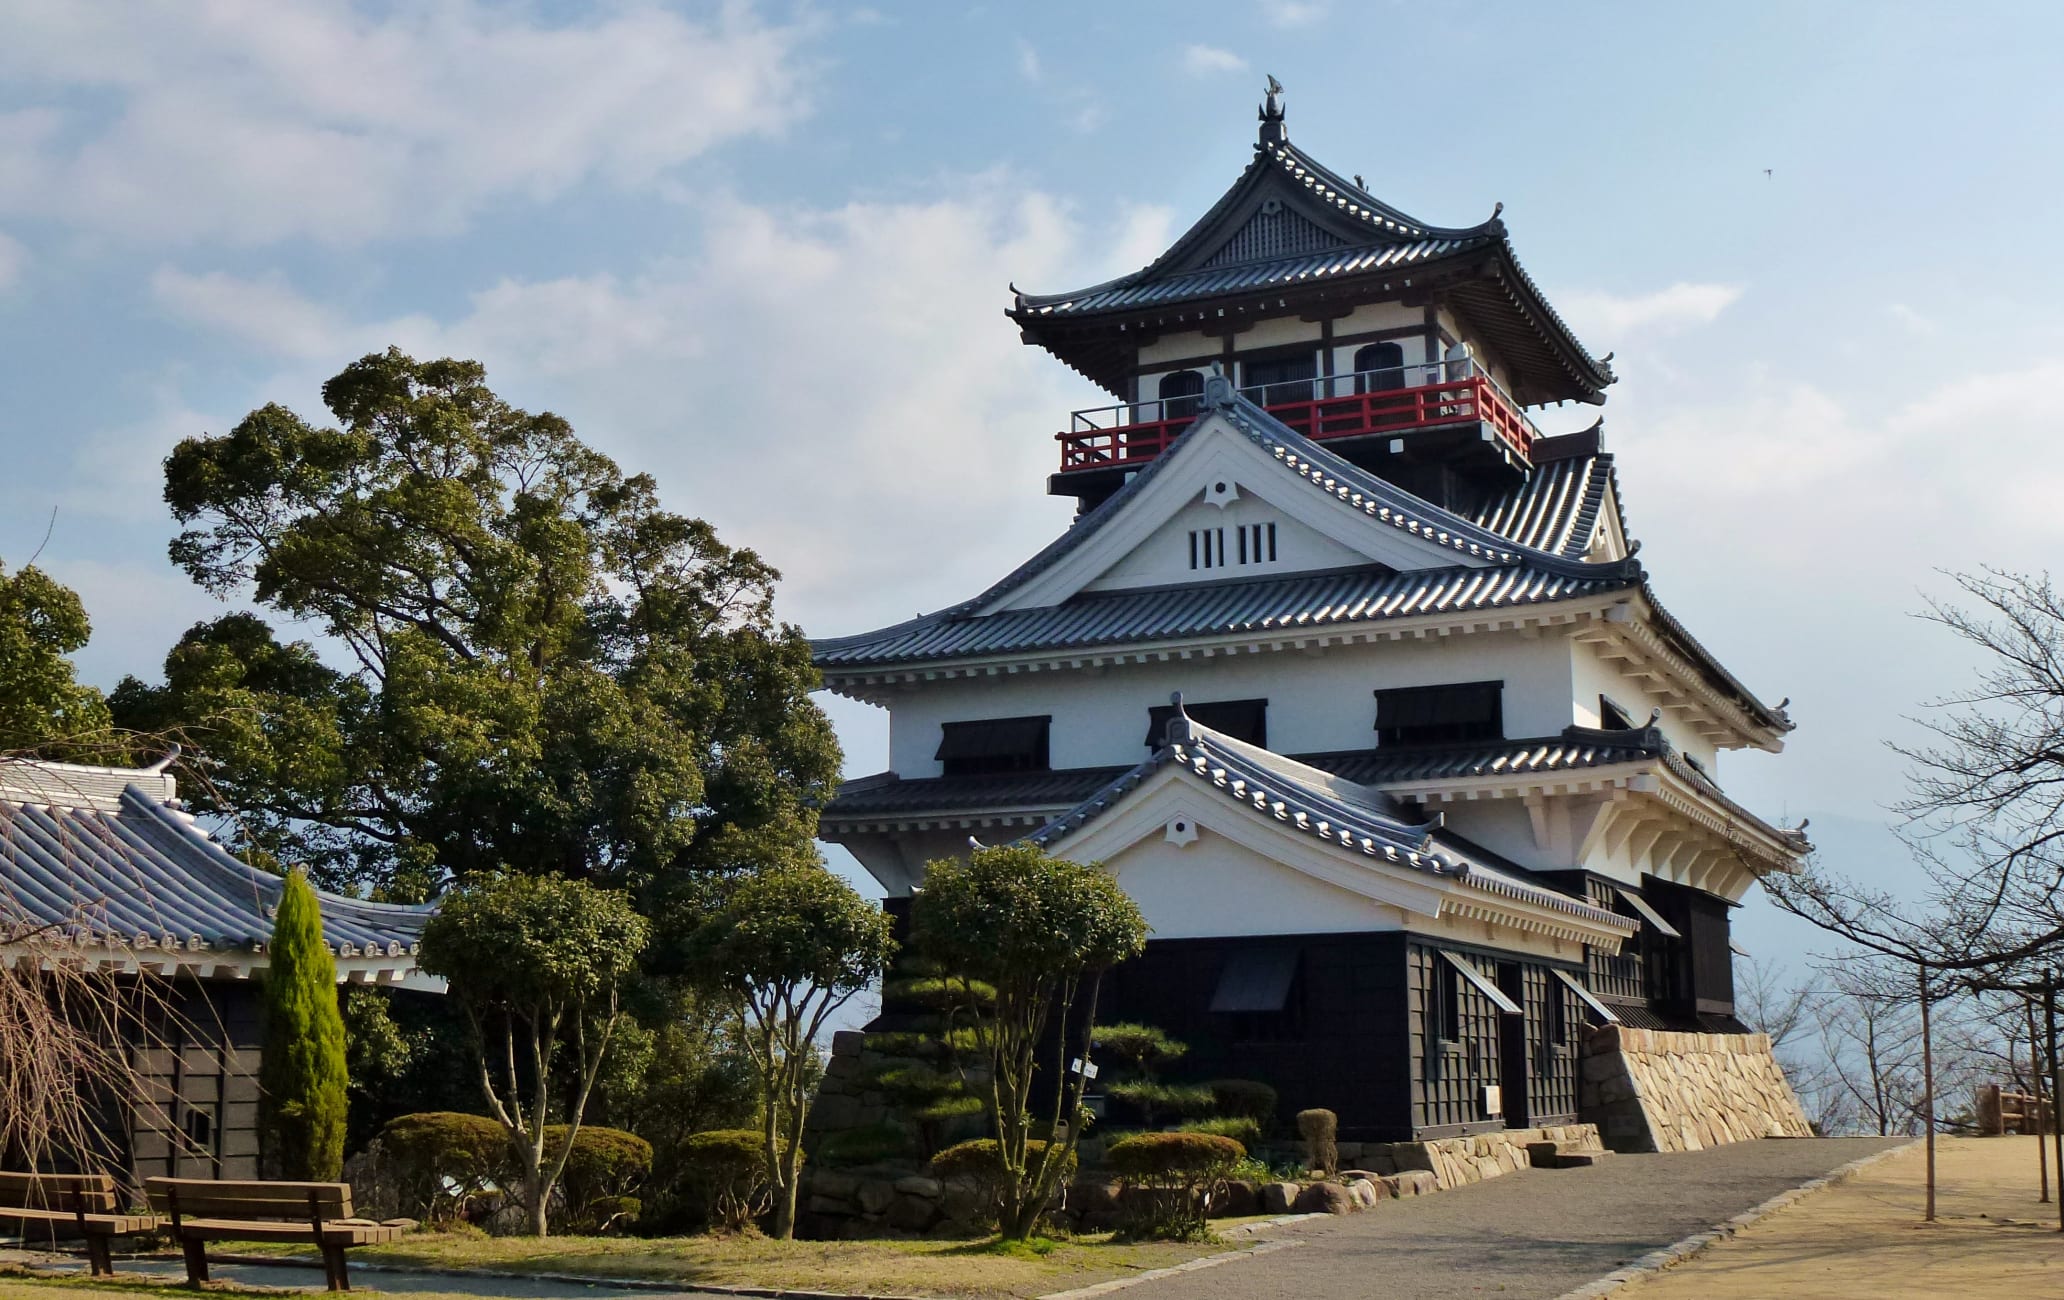 Kawanoe Castle